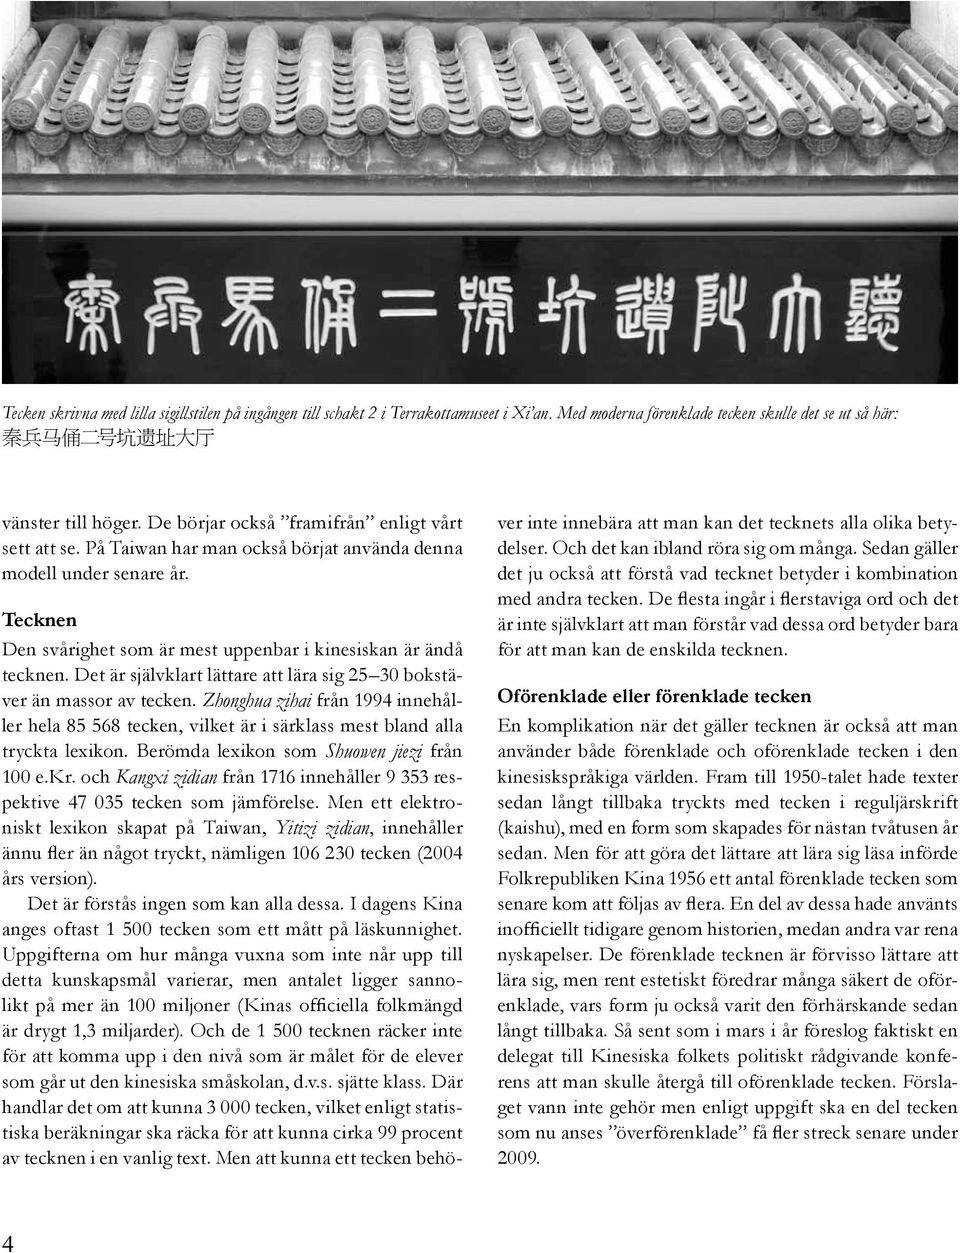 Det är självklart lättare att lära sig 25 30 bokstäver än massor av tecken. Zhonghua zihai från 1994 innehåller hela 85 568 tecken, vilket är i särklass mest bland alla tryckta lexikon.